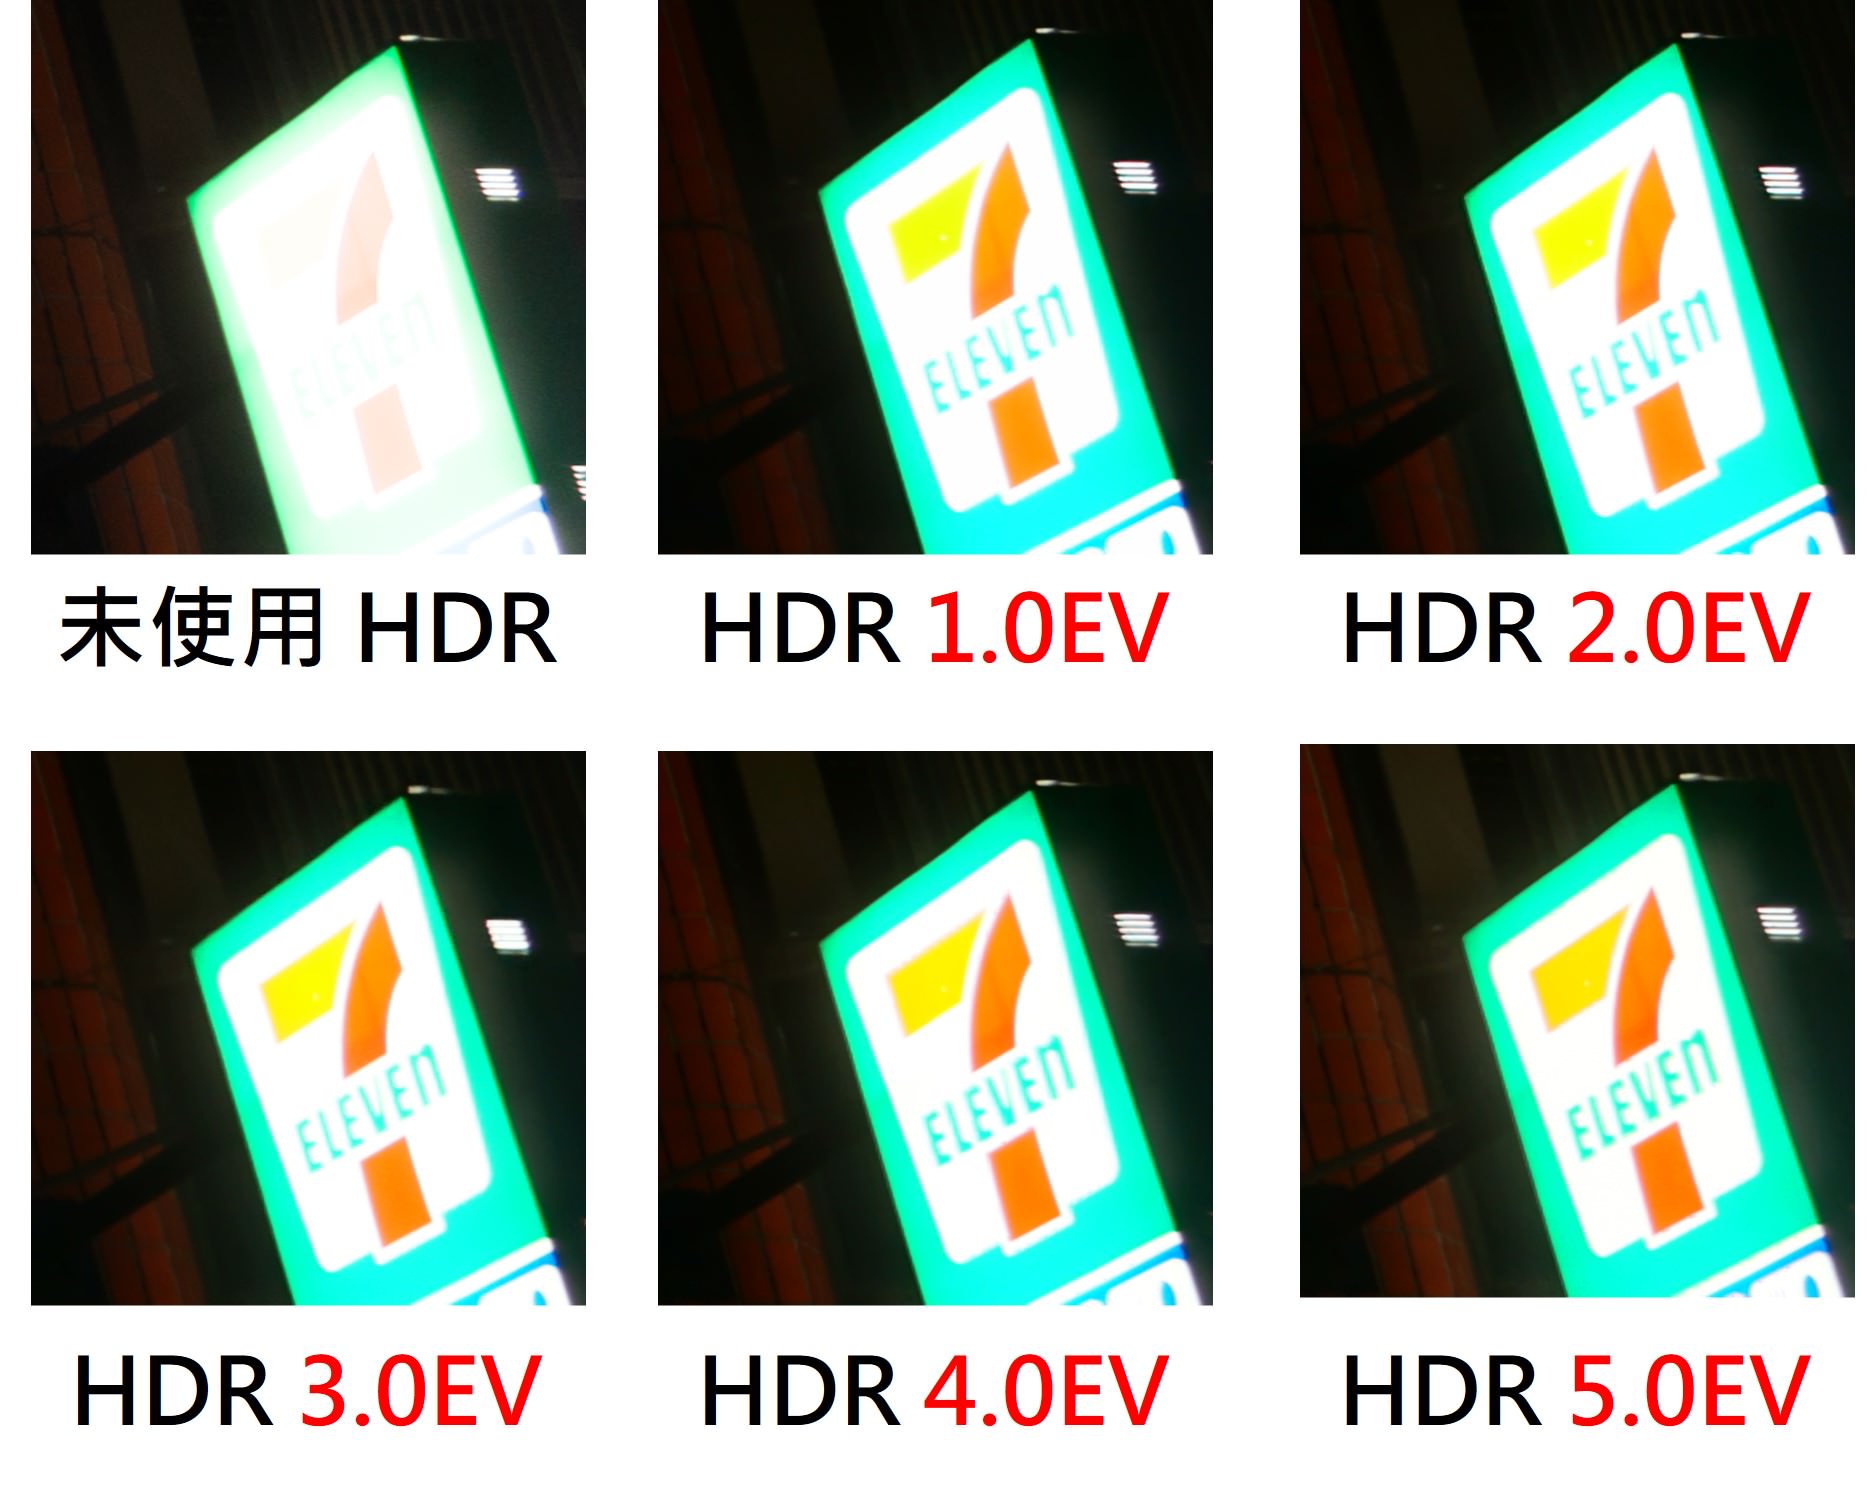 自動 HDR